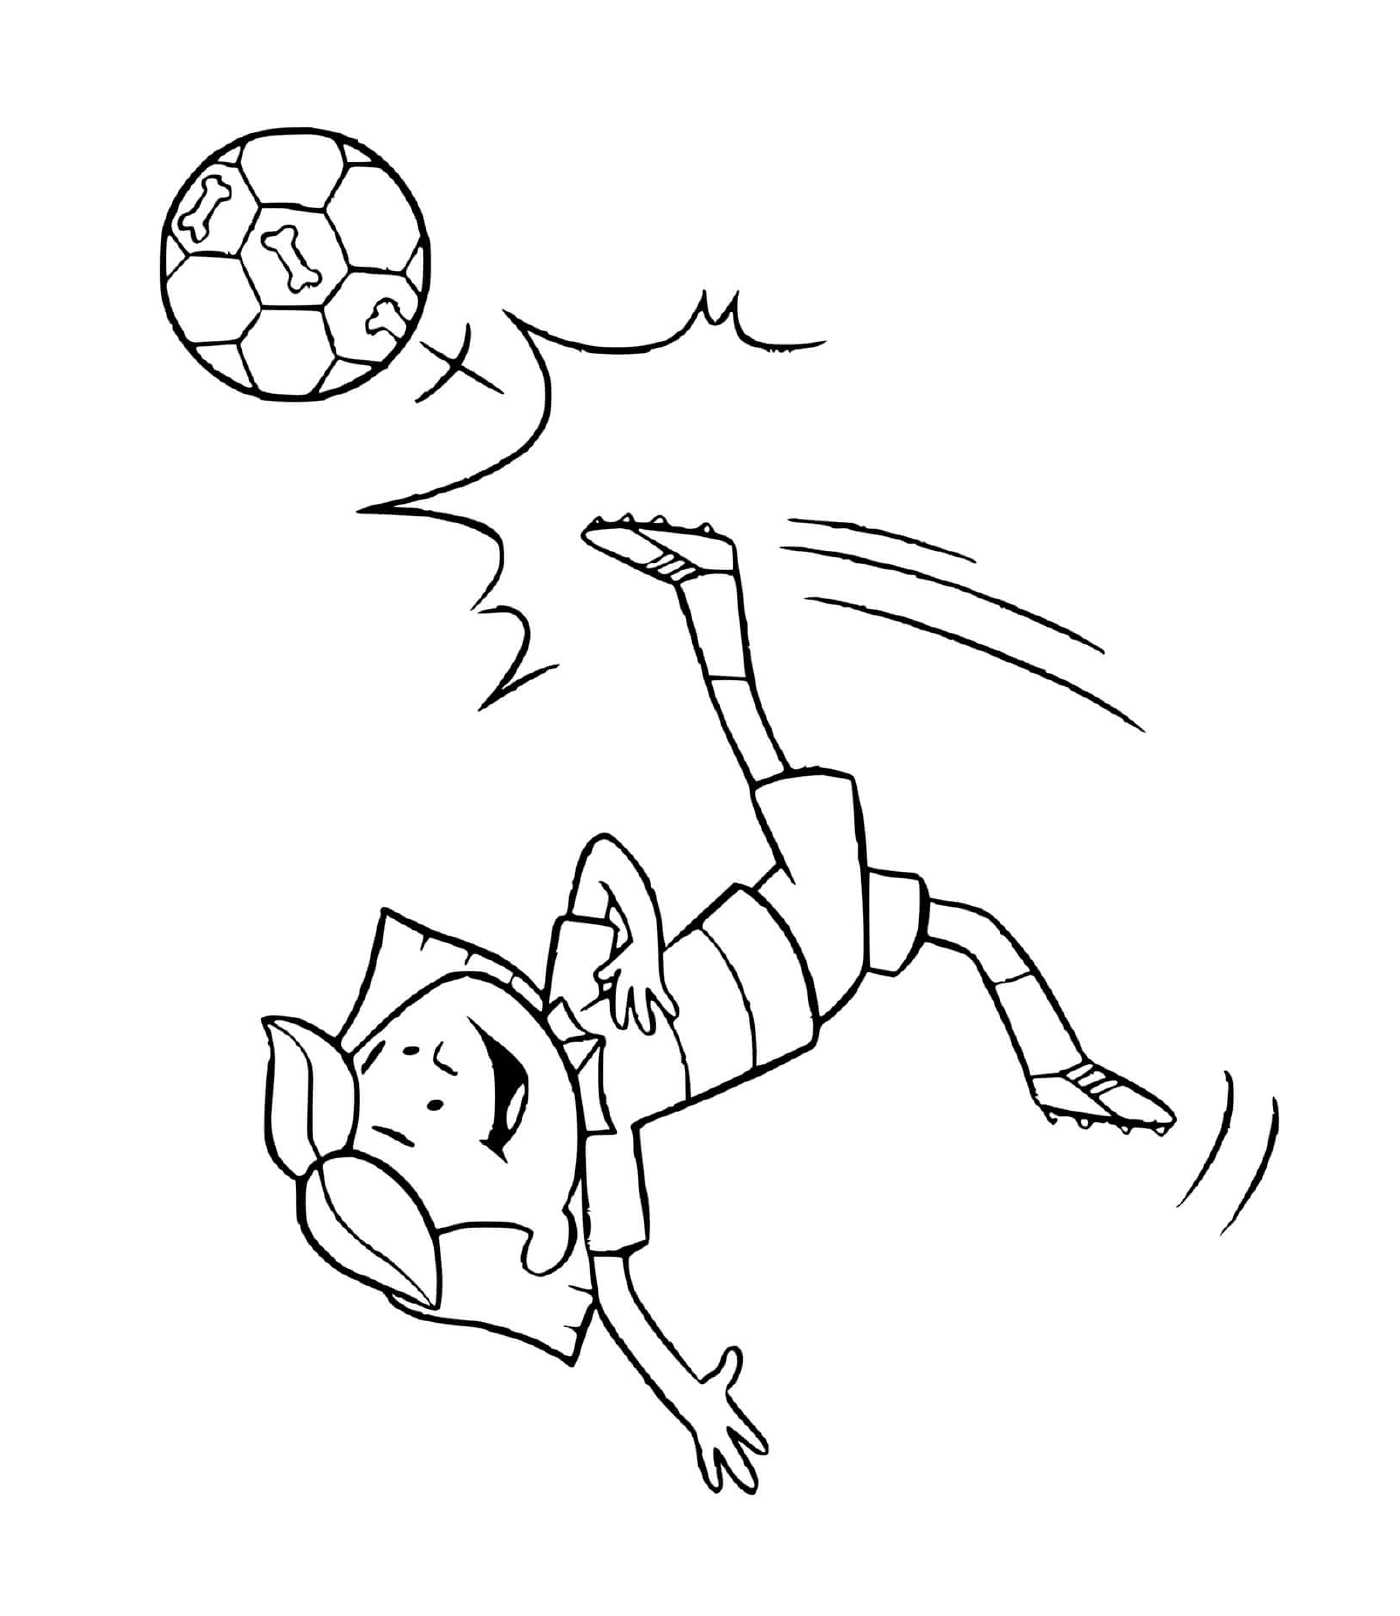  Emily spielt Fußball und punktet ein Tor 